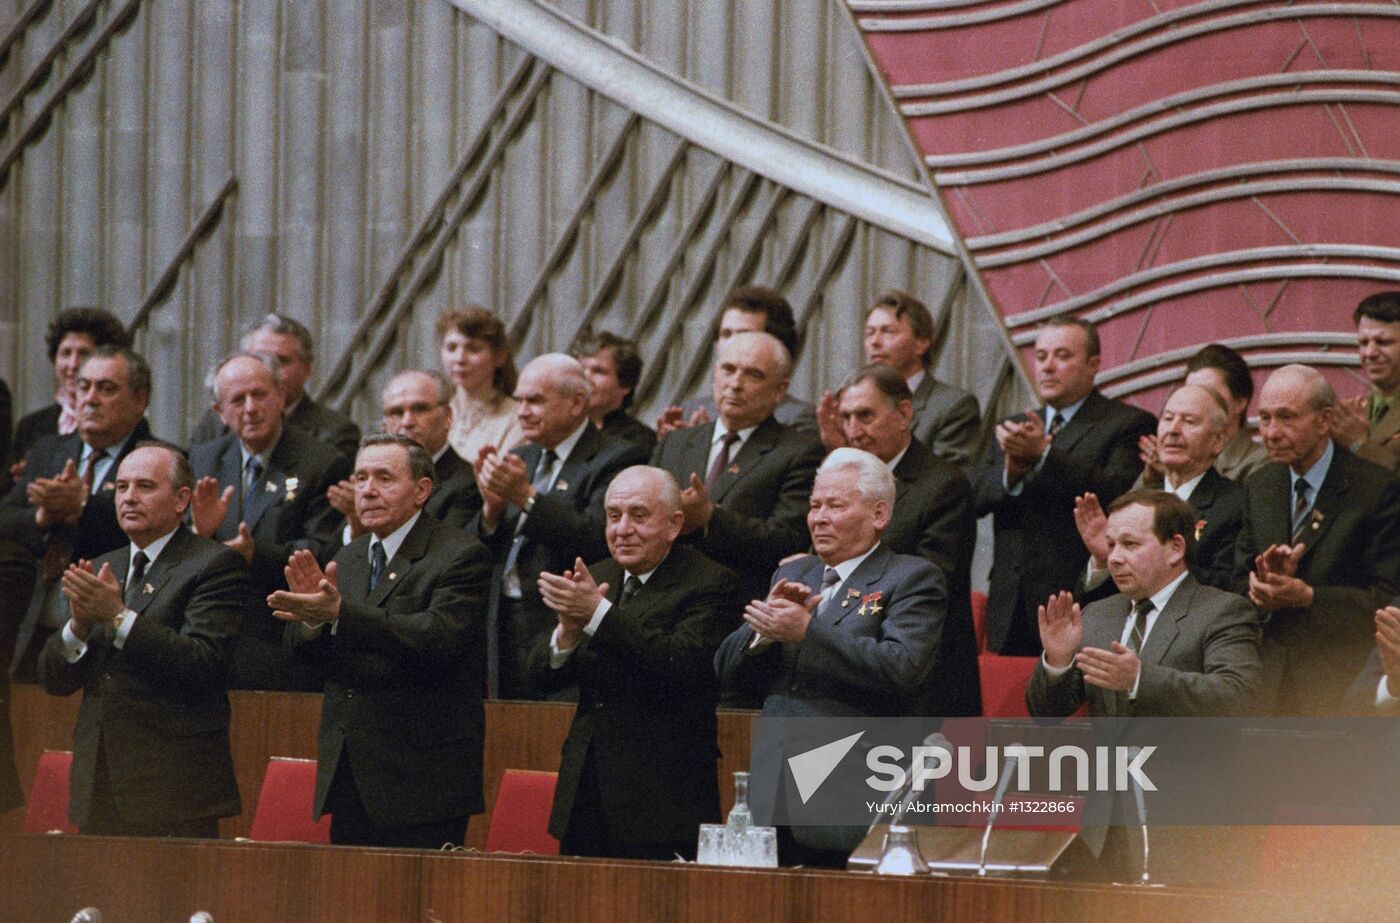 Mikhail Gorbachev, Andrei Gromyko and Konstantin Chernenko